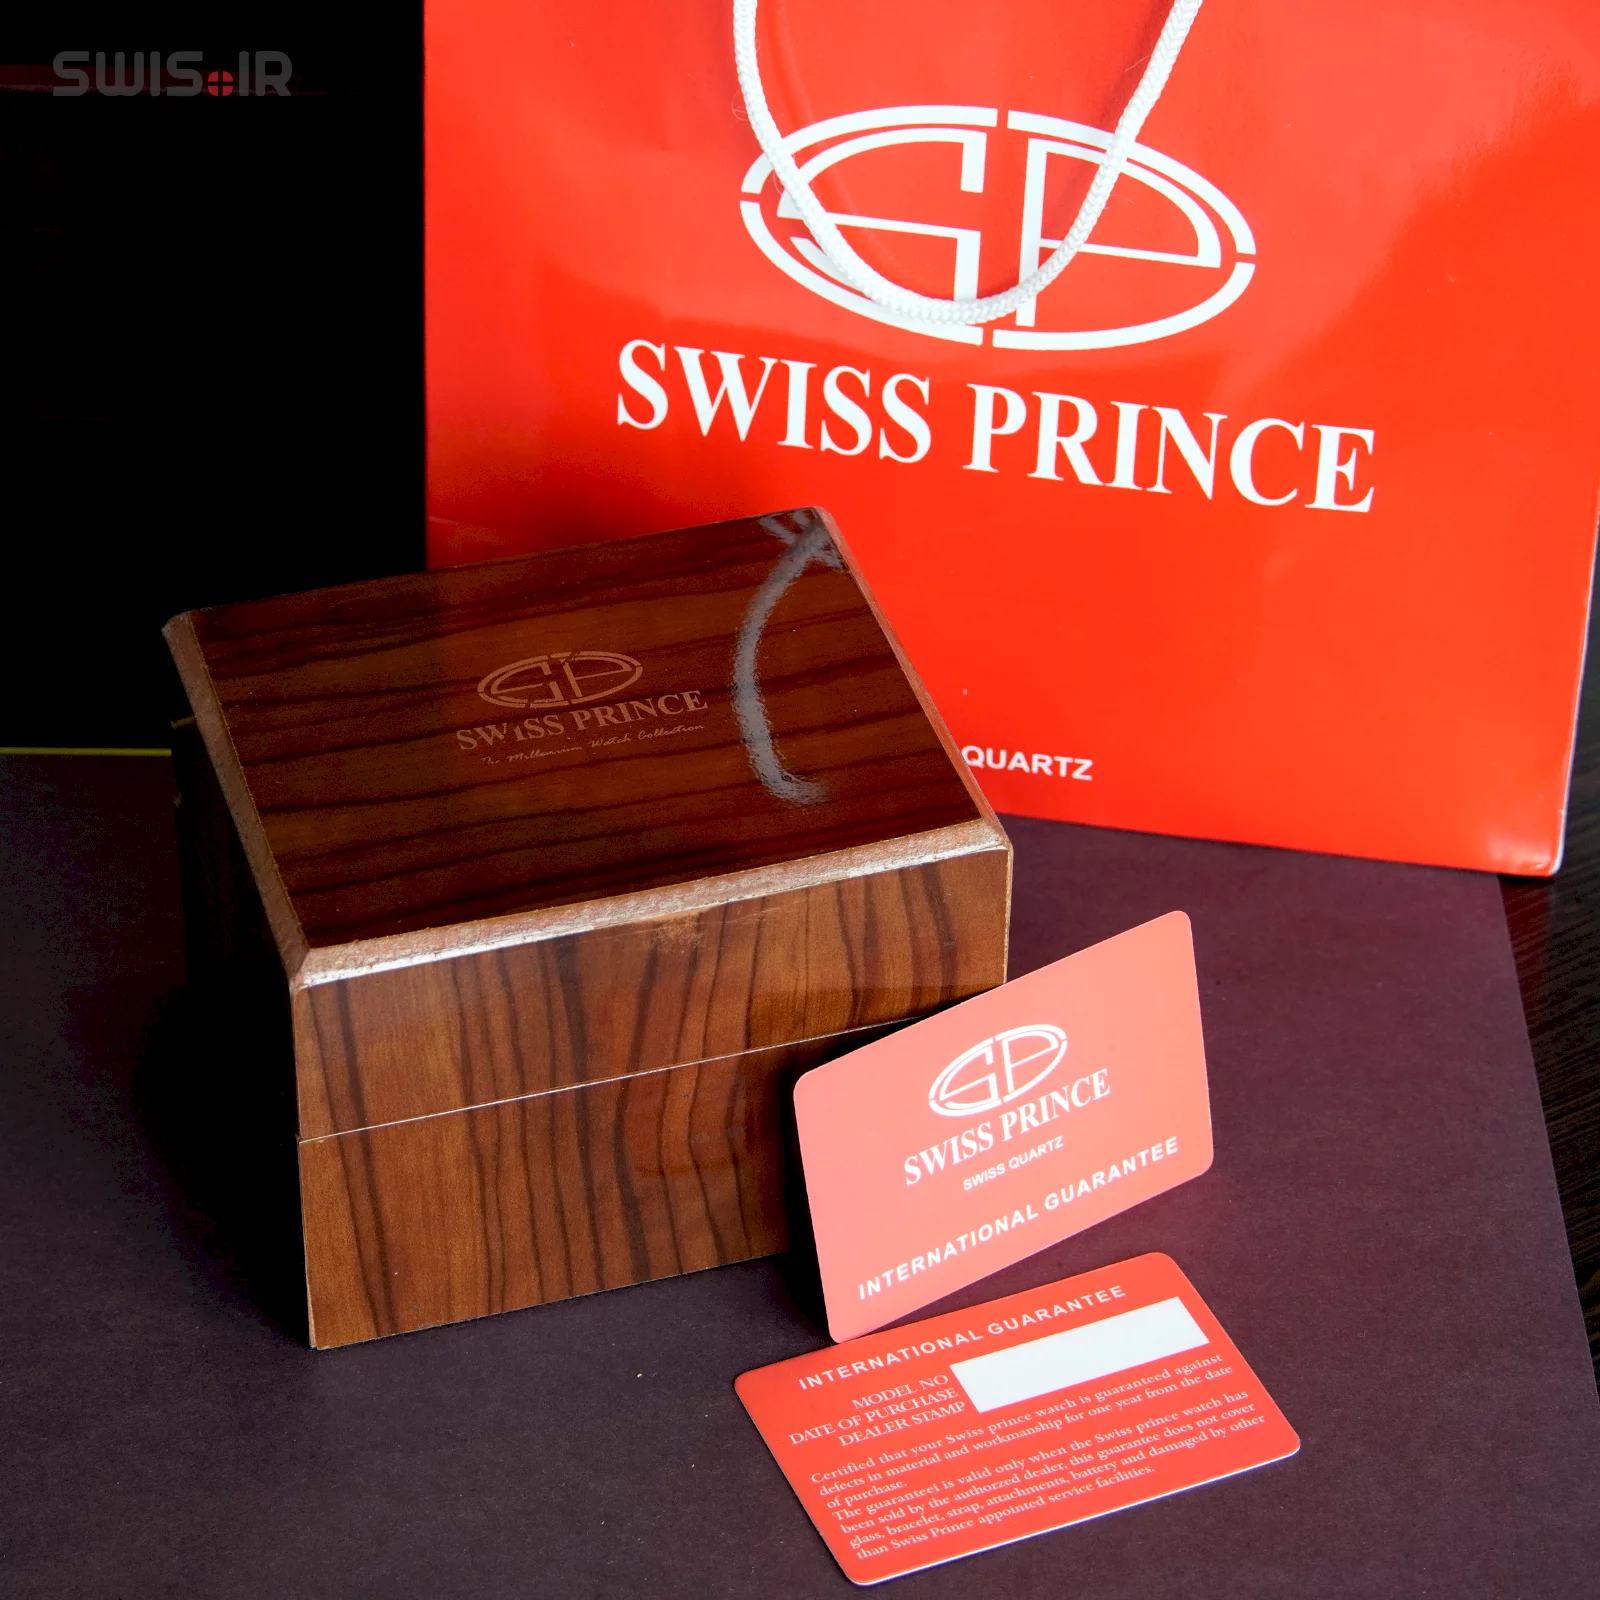 نمونه جعبه ساعت مچی و ساک مخصوص و کارت گارانتی برند سوئیس پرینس